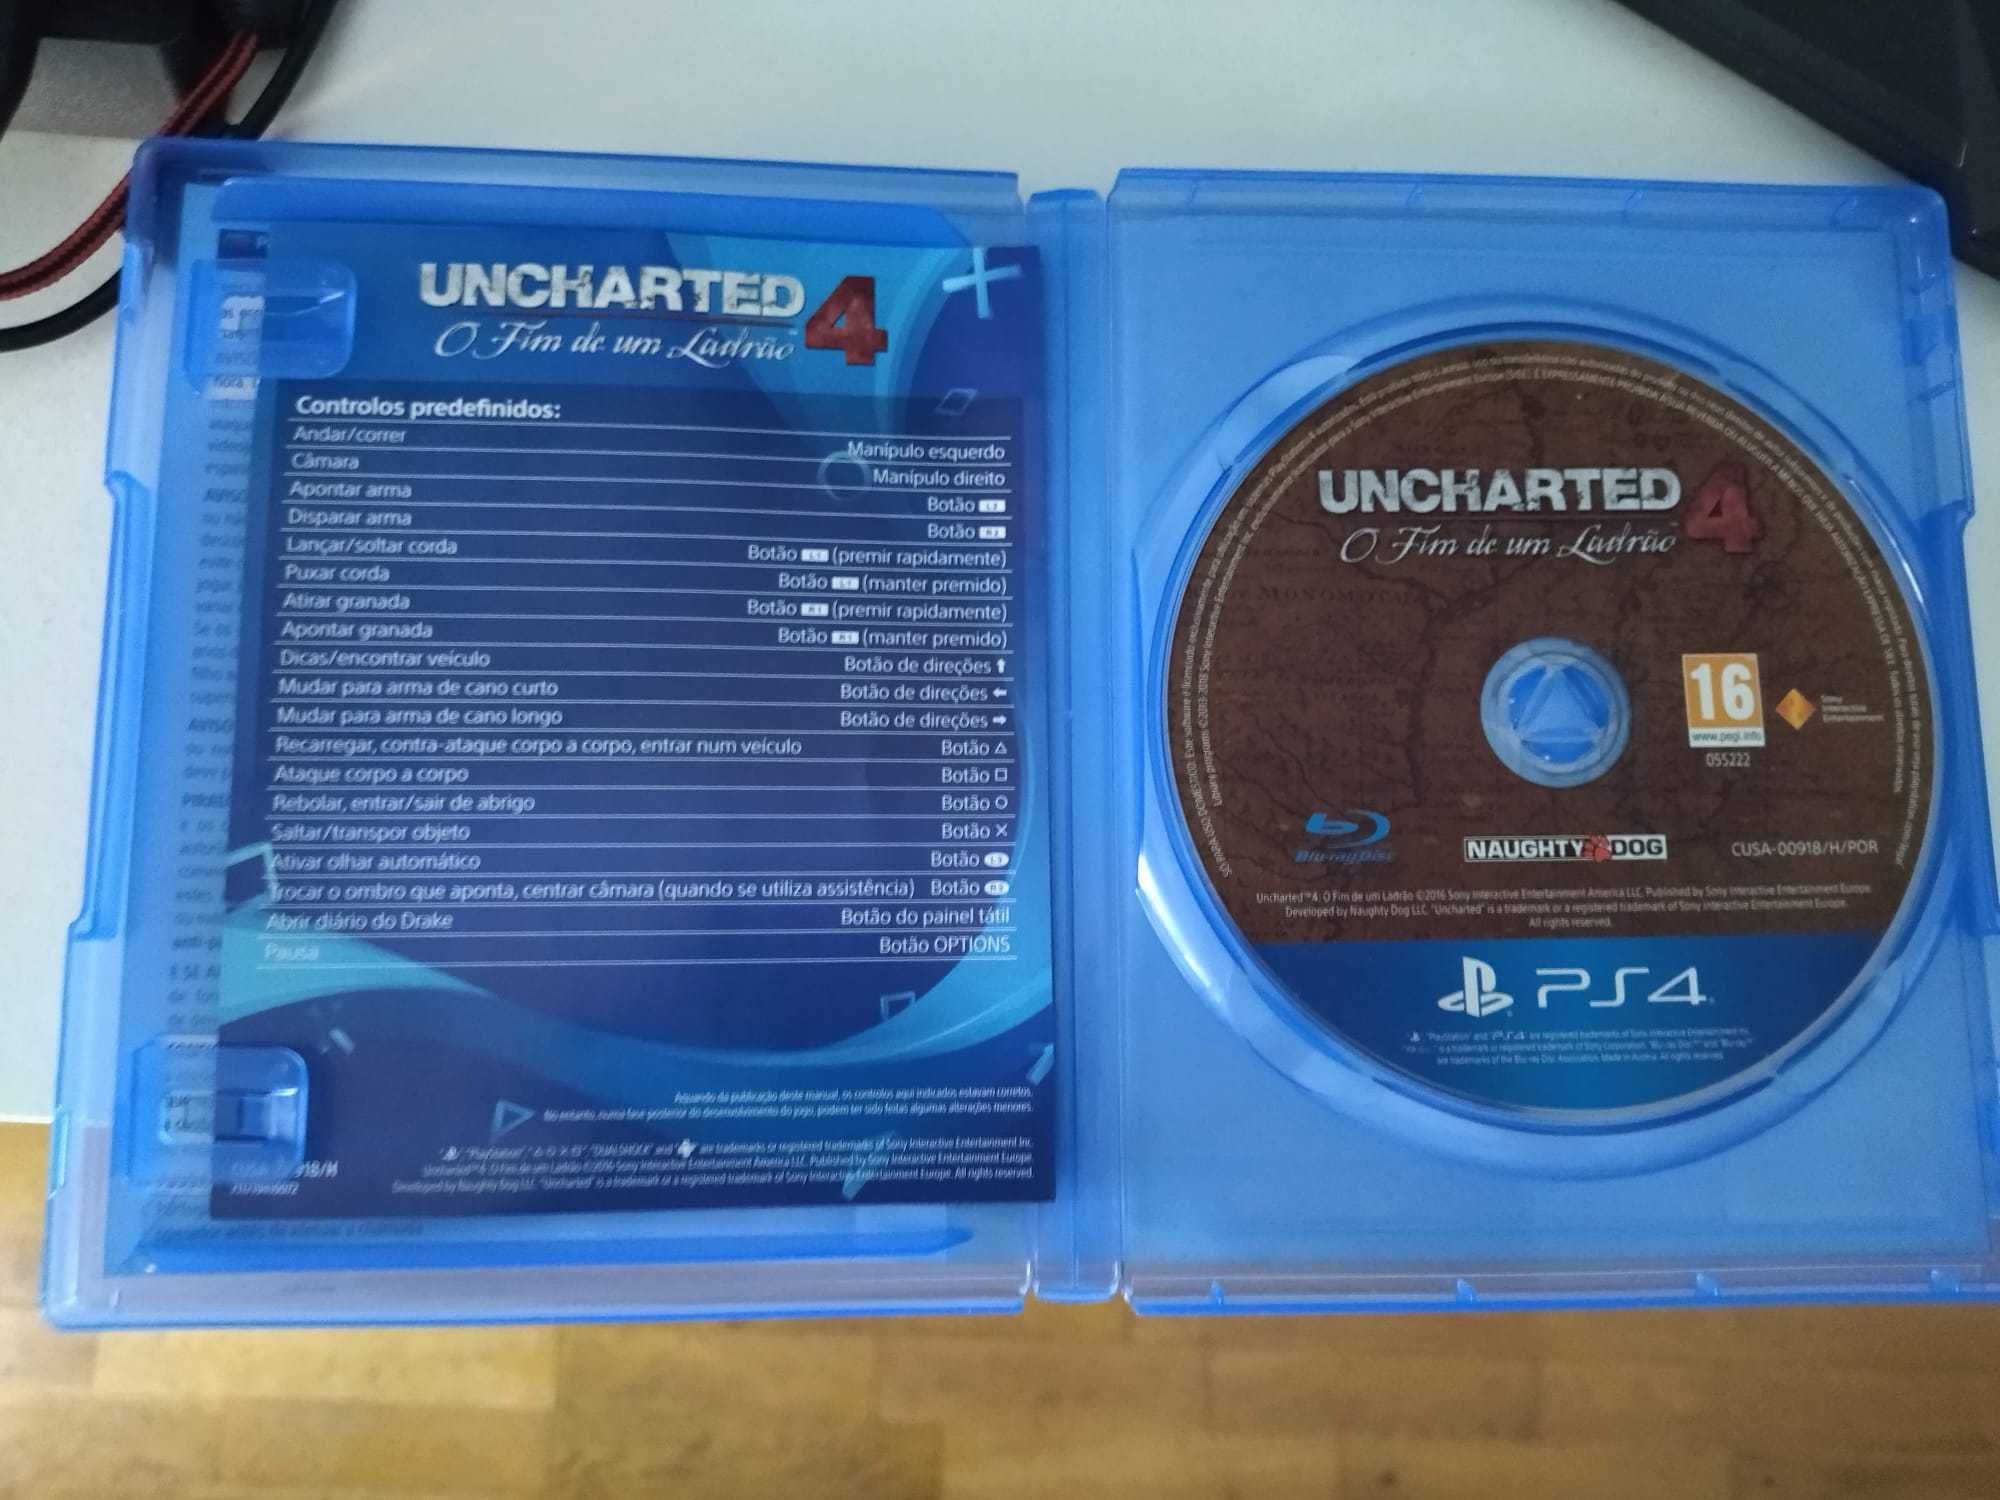 PS4 uncharted 4 "O fim de um ladrão"